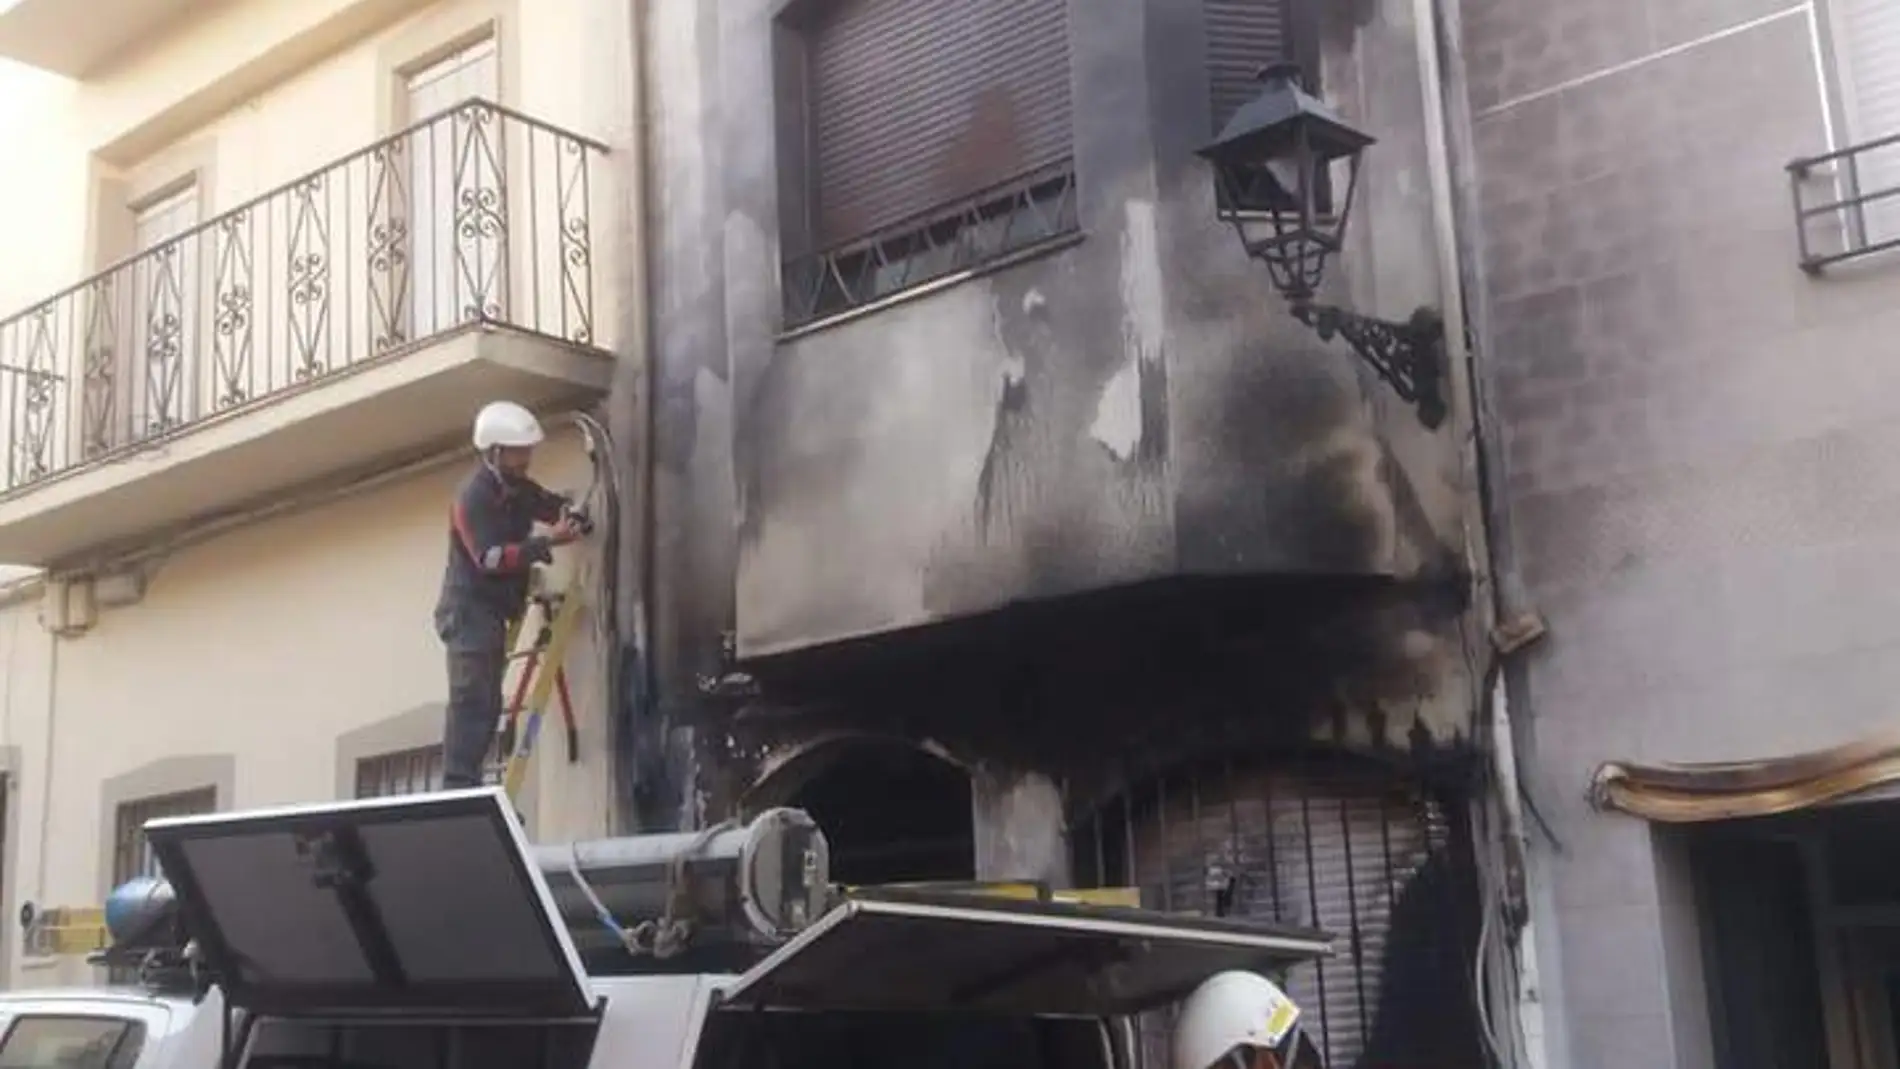 Atacan la casa del alcalde de Navas de San Juan con un contenedor en llamas